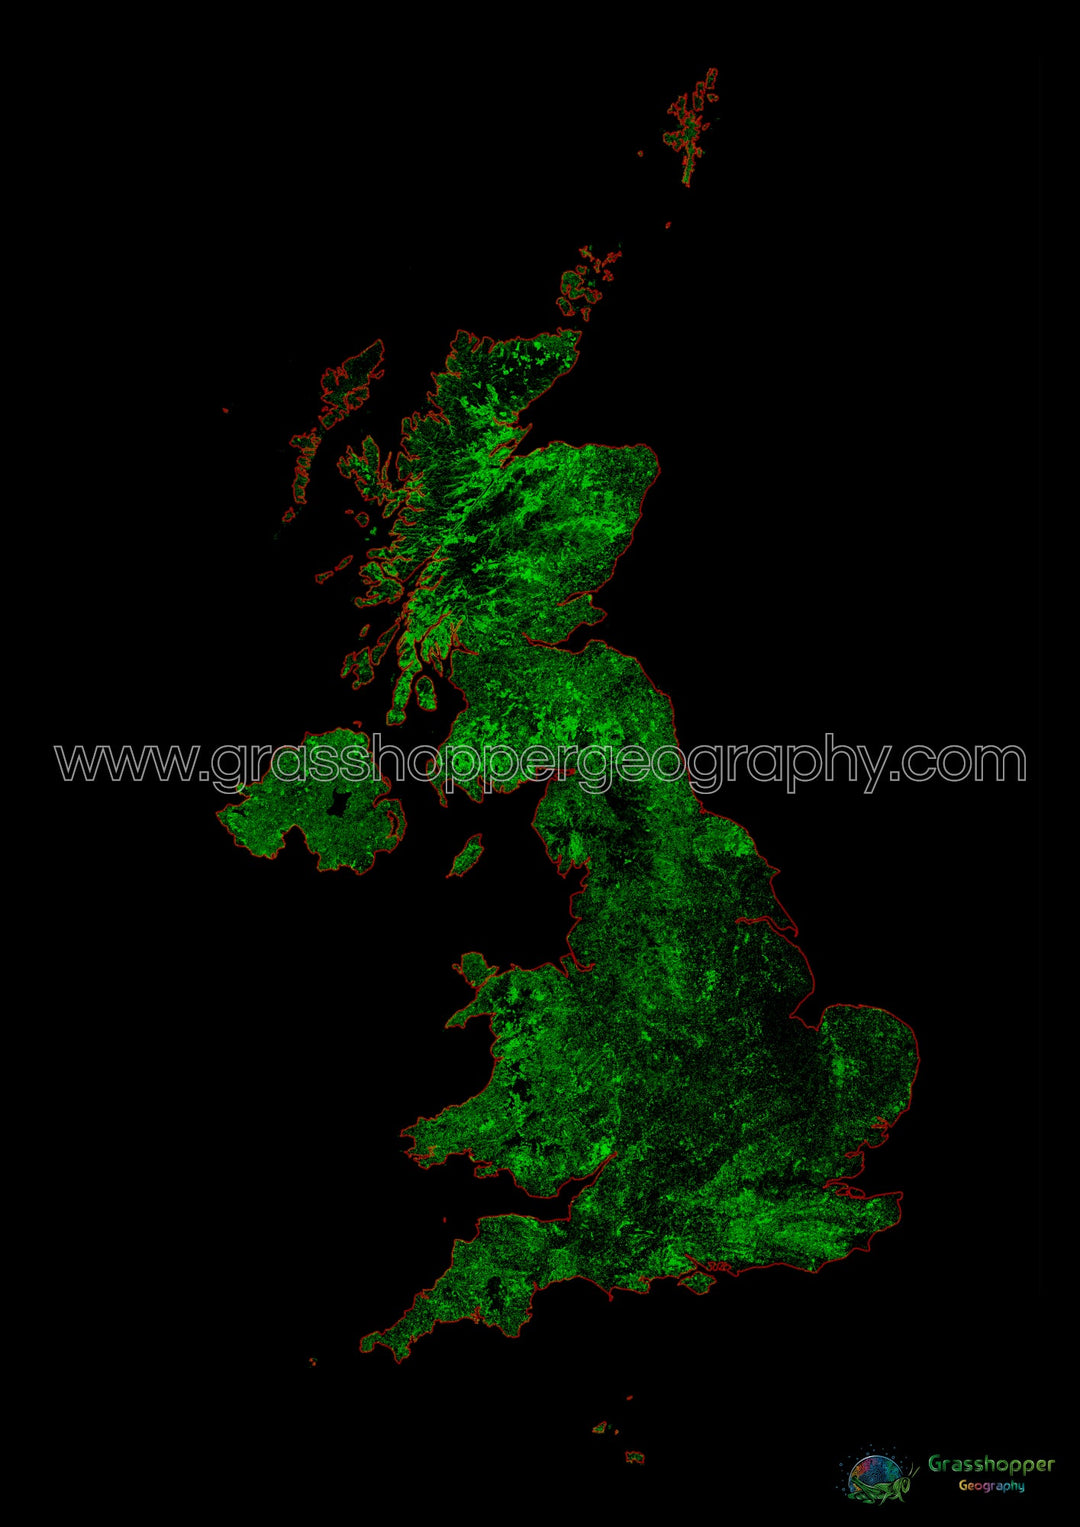 Reino Unido - Mapa de cobertura forestal - Impresión de bellas artes